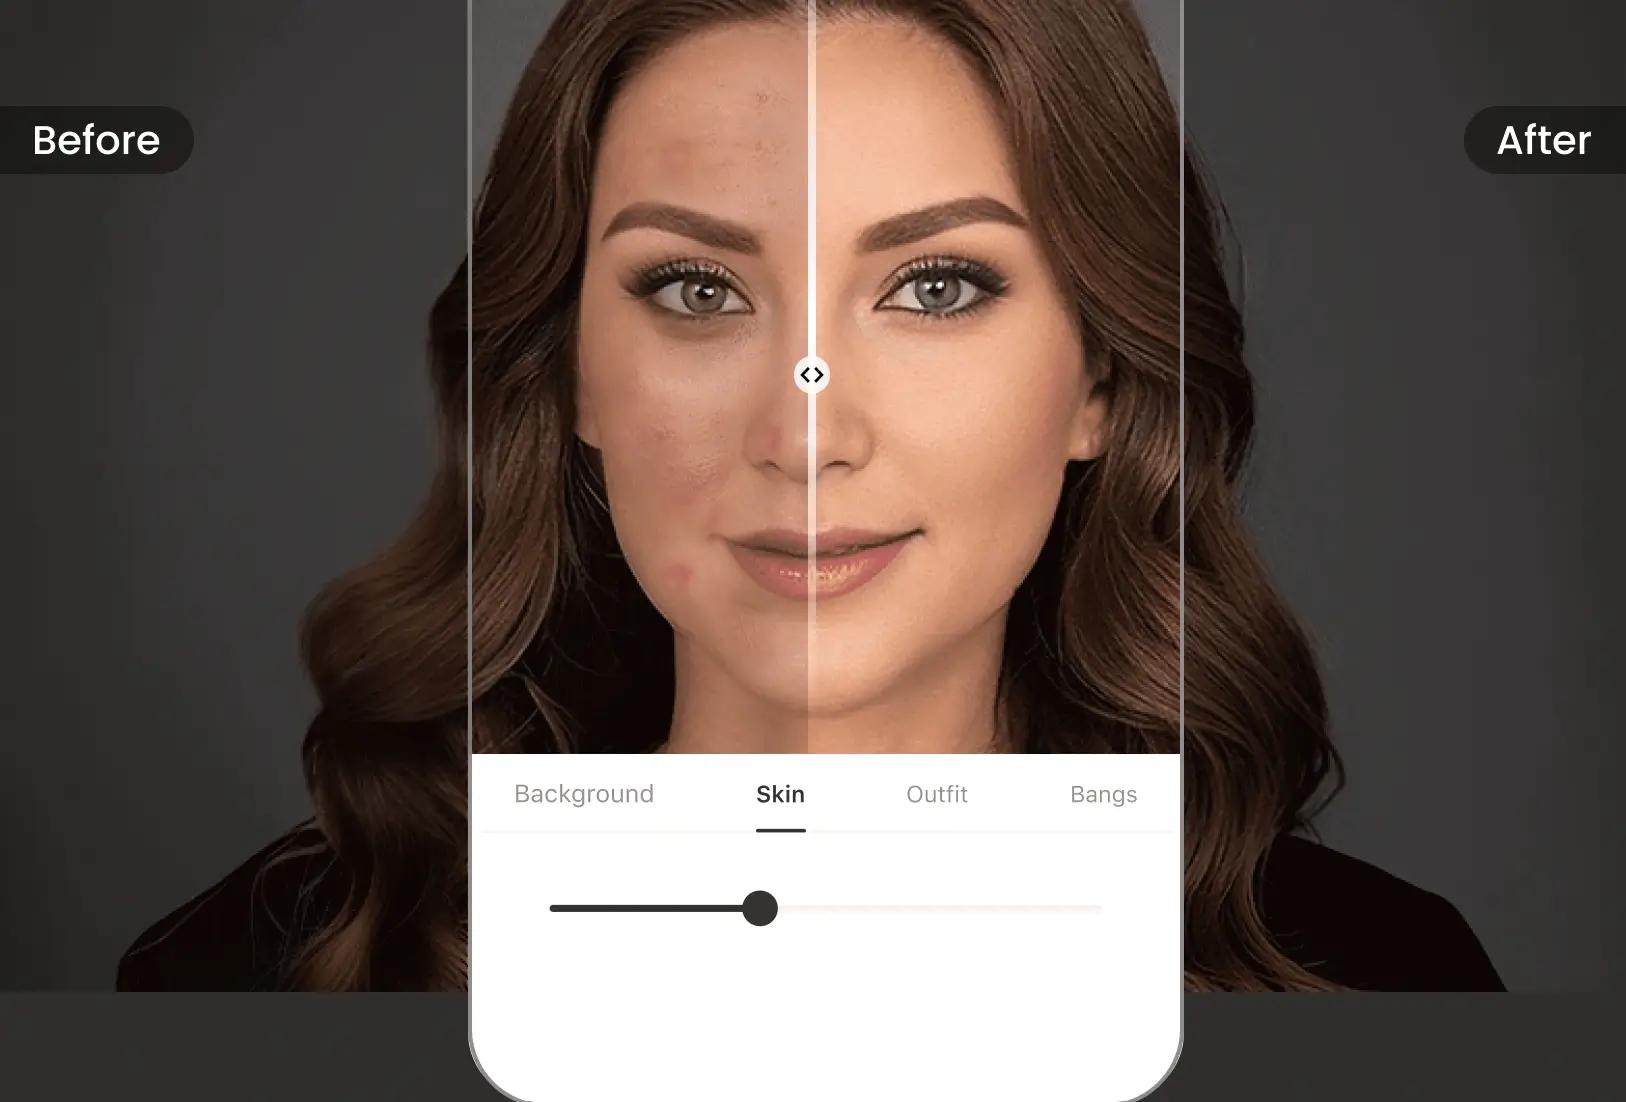 당사 앱의 특화된 뷰티 효과로 증명사진에서 자연스러우면서도 세련된 모습을 연출하세요.